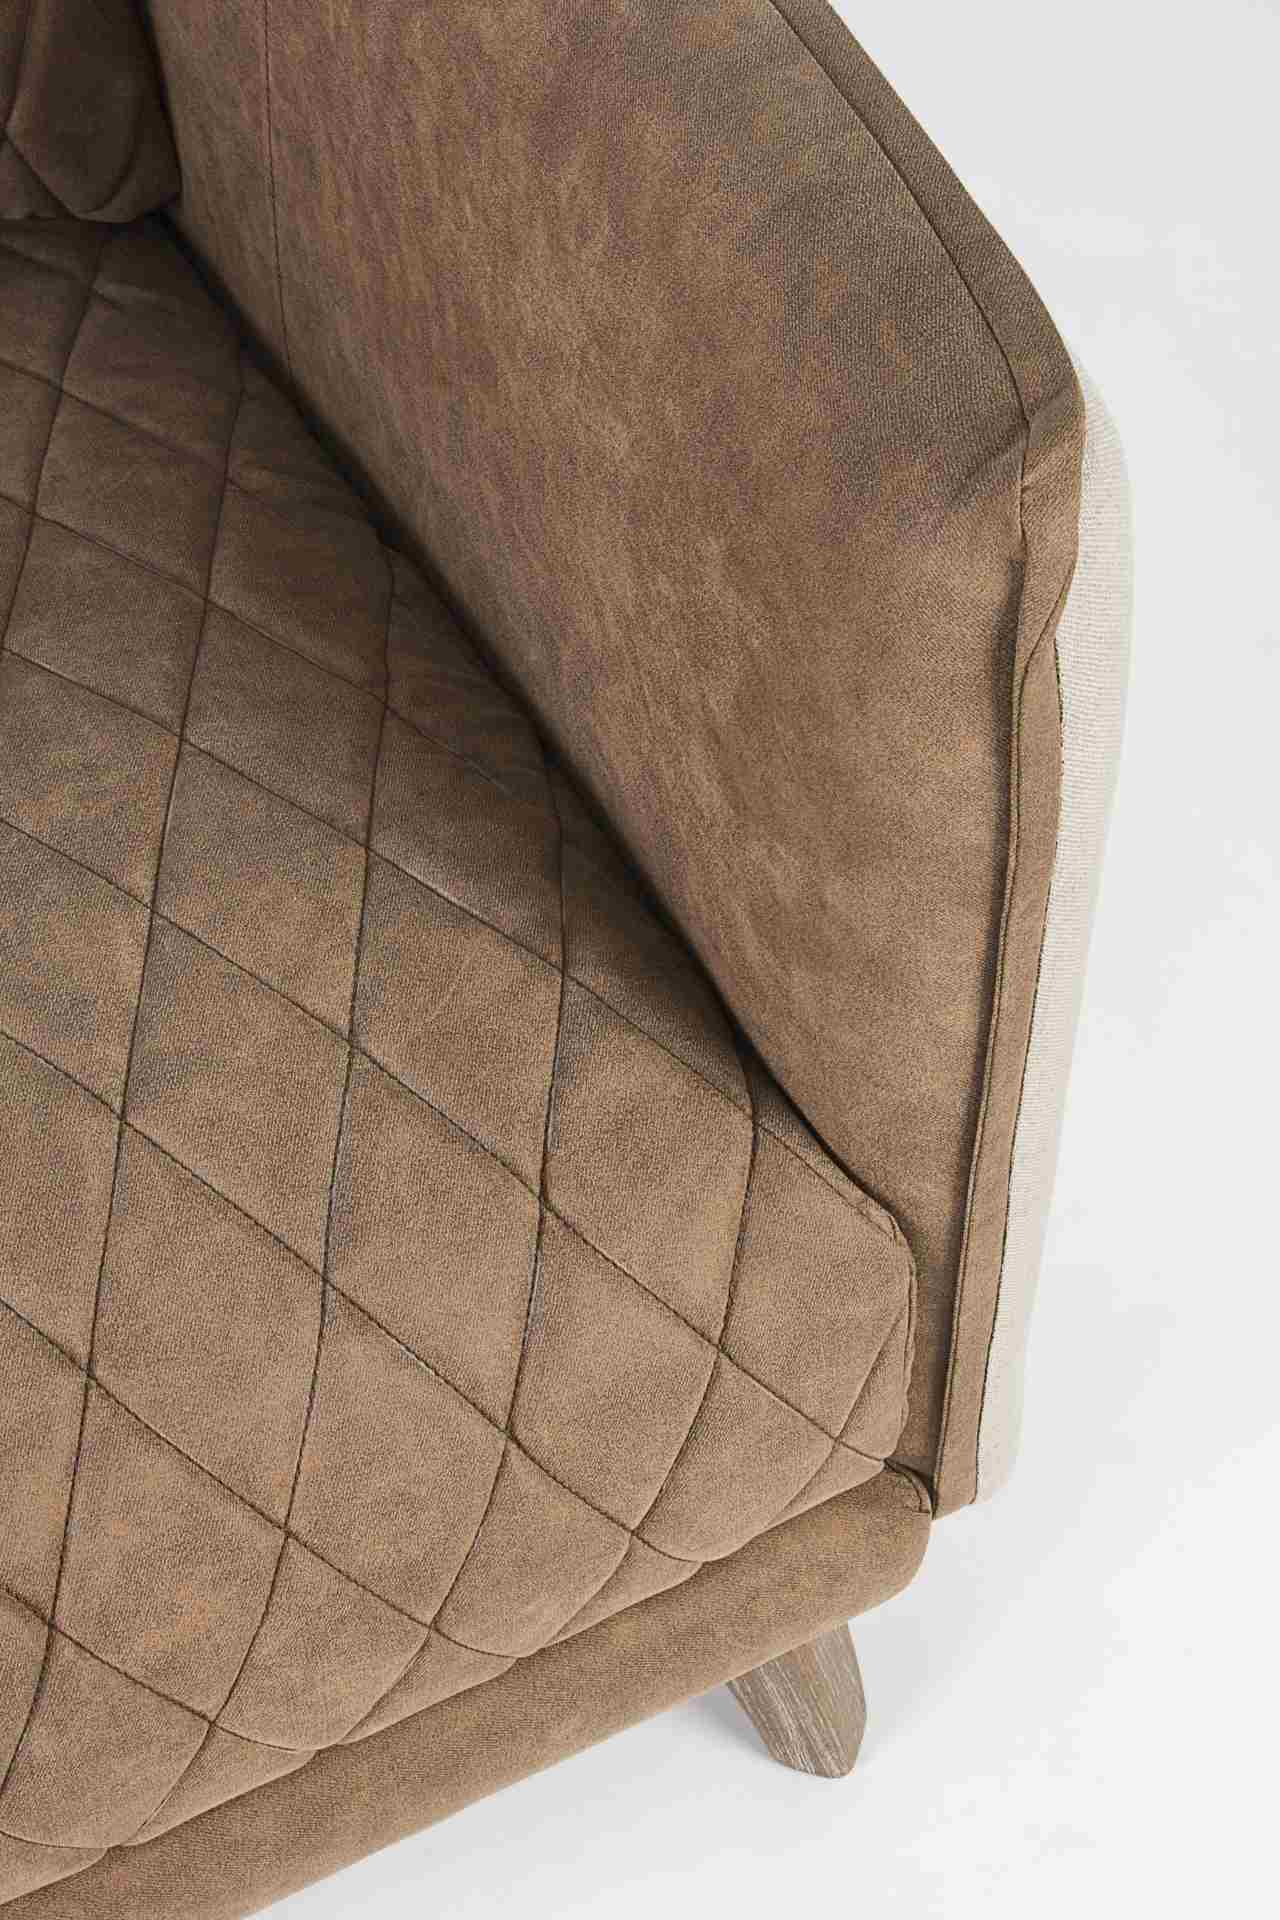 Das Sofa Helston überzeugt mit seinem klassischen Design. Gefertigt wurde es aus Kunstleder, welches einen Cognac Farbton besitzt. Das Gestell ist aus Eschenholz und hat eine natürliche Farbe. Das Sofa ist in der Ausführung als 3-Sitzer. Die Breite beträg